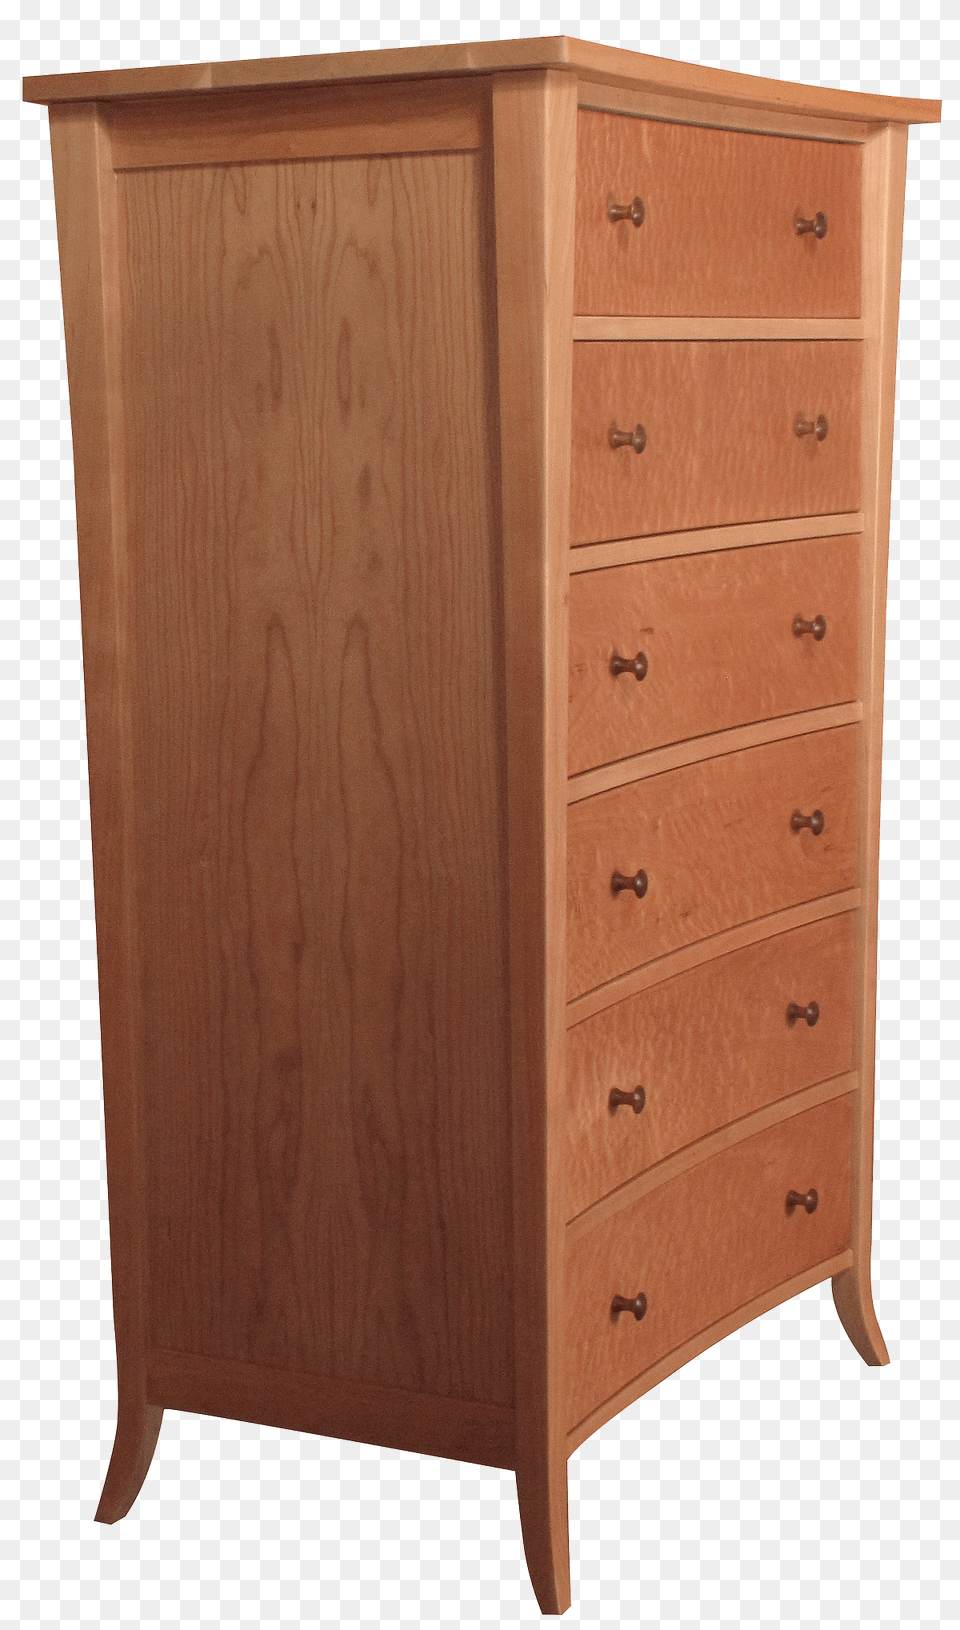 Dresser, Cabinet, Drawer, Furniture, Mailbox Png Image